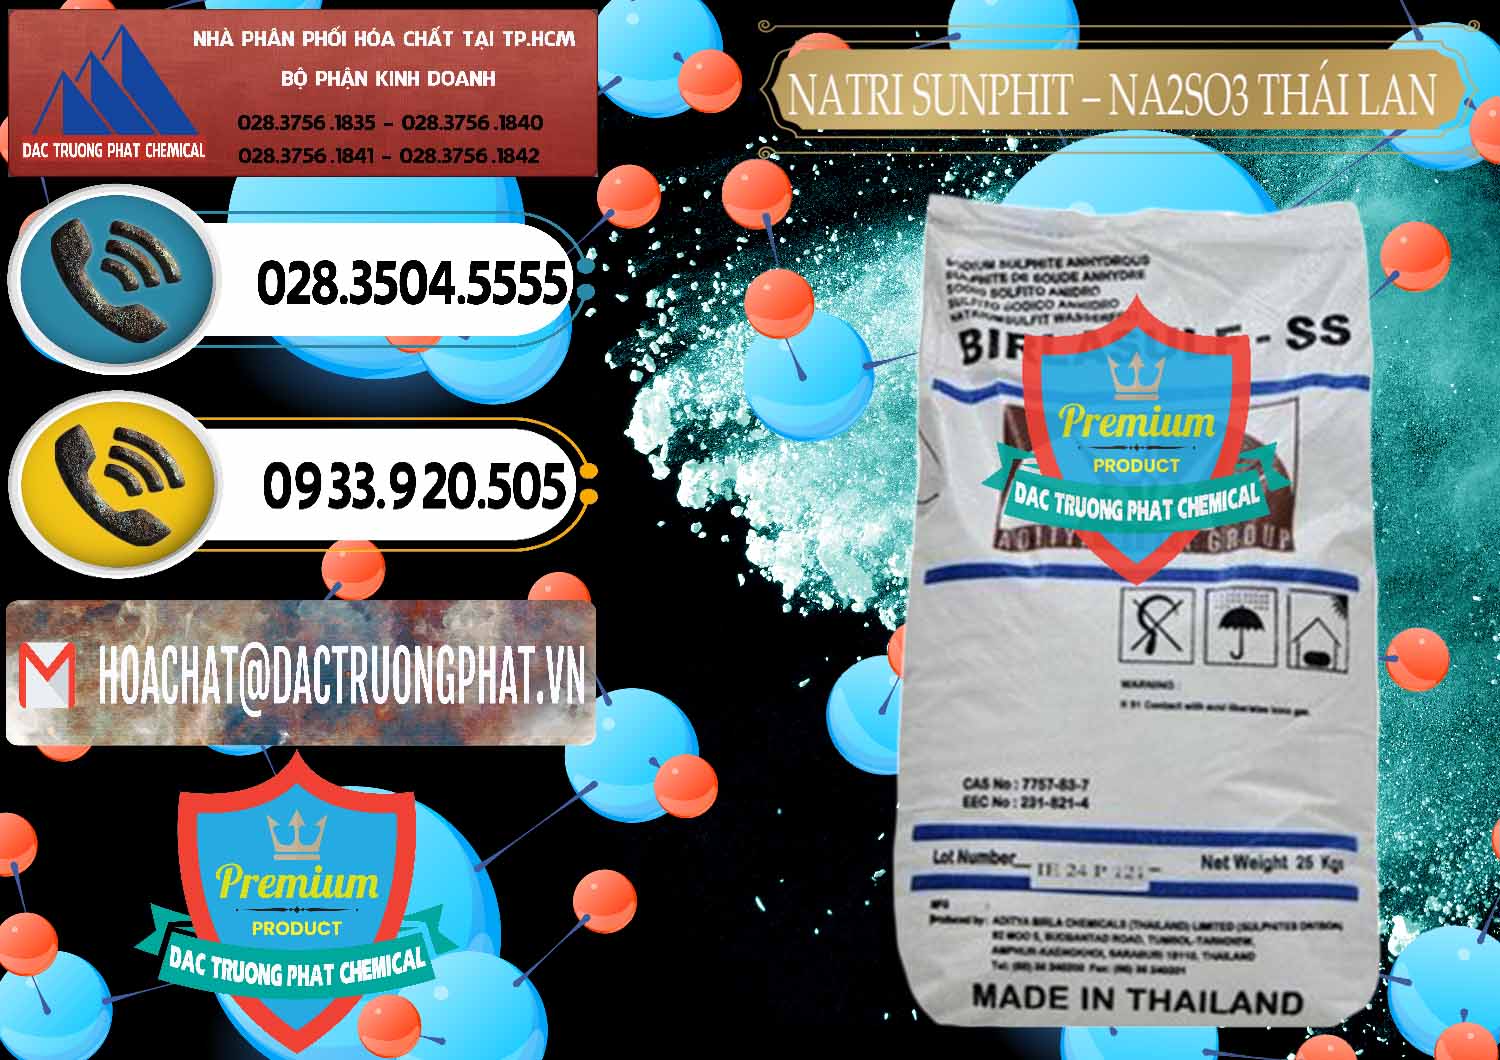 Cty bán _ cung ứng Natri Sunphit - NA2SO3 Thái Lan - 0105 - Cty phân phối & cung ứng hóa chất tại TP.HCM - hoachatdetnhuom.vn